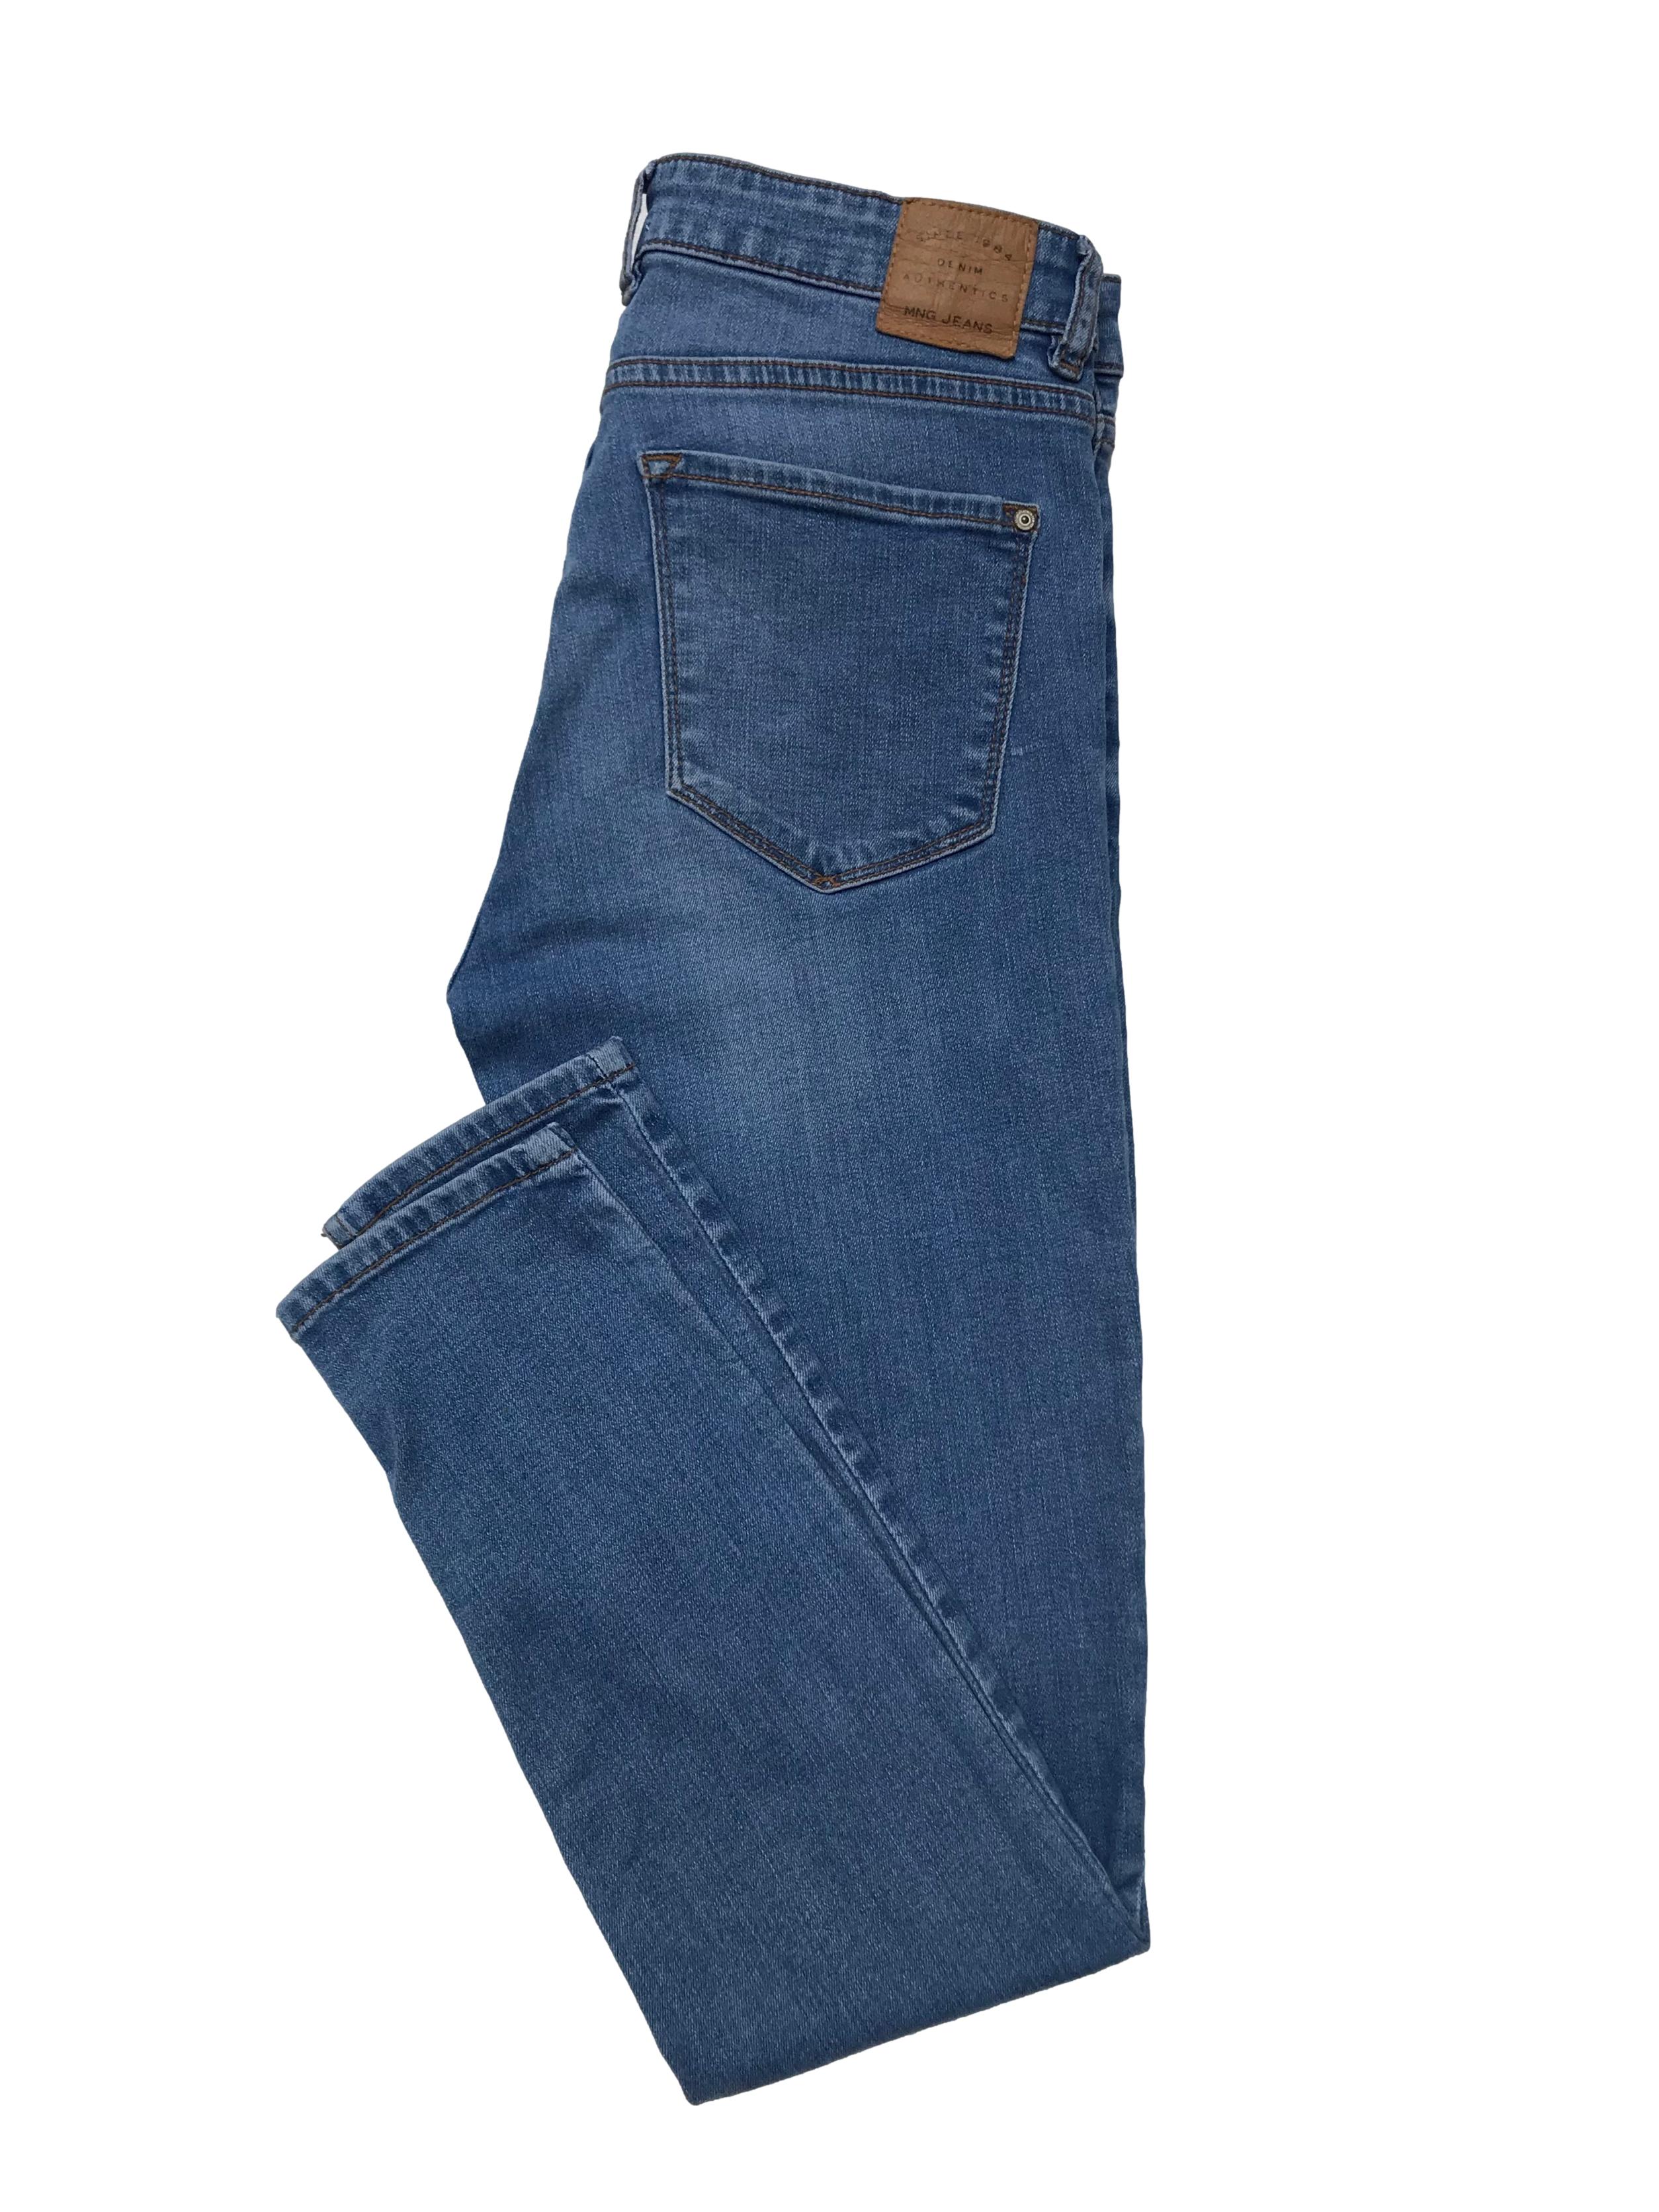 Skinny jean Mango 98% algodón stretch, efecto focalizado, bolsillos delanteros y traseros. Cintura 72cm Largo 93cm